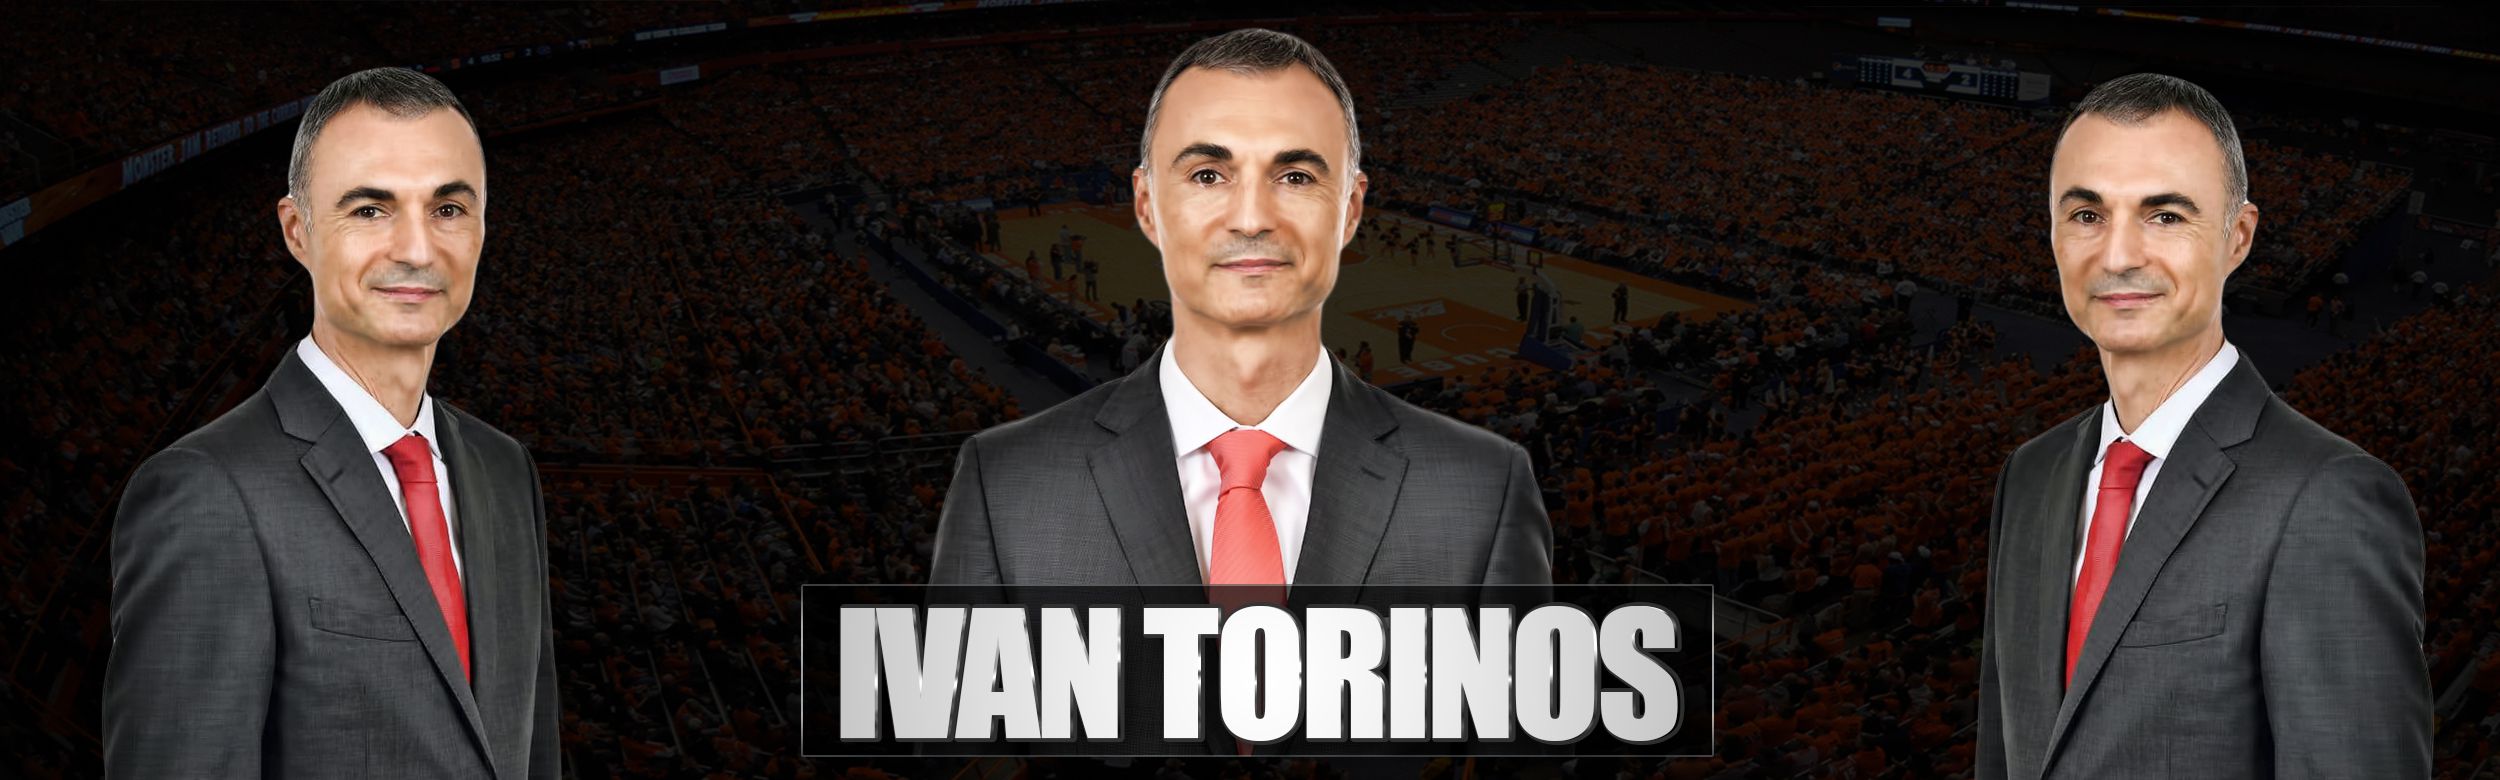 Iván Torinos